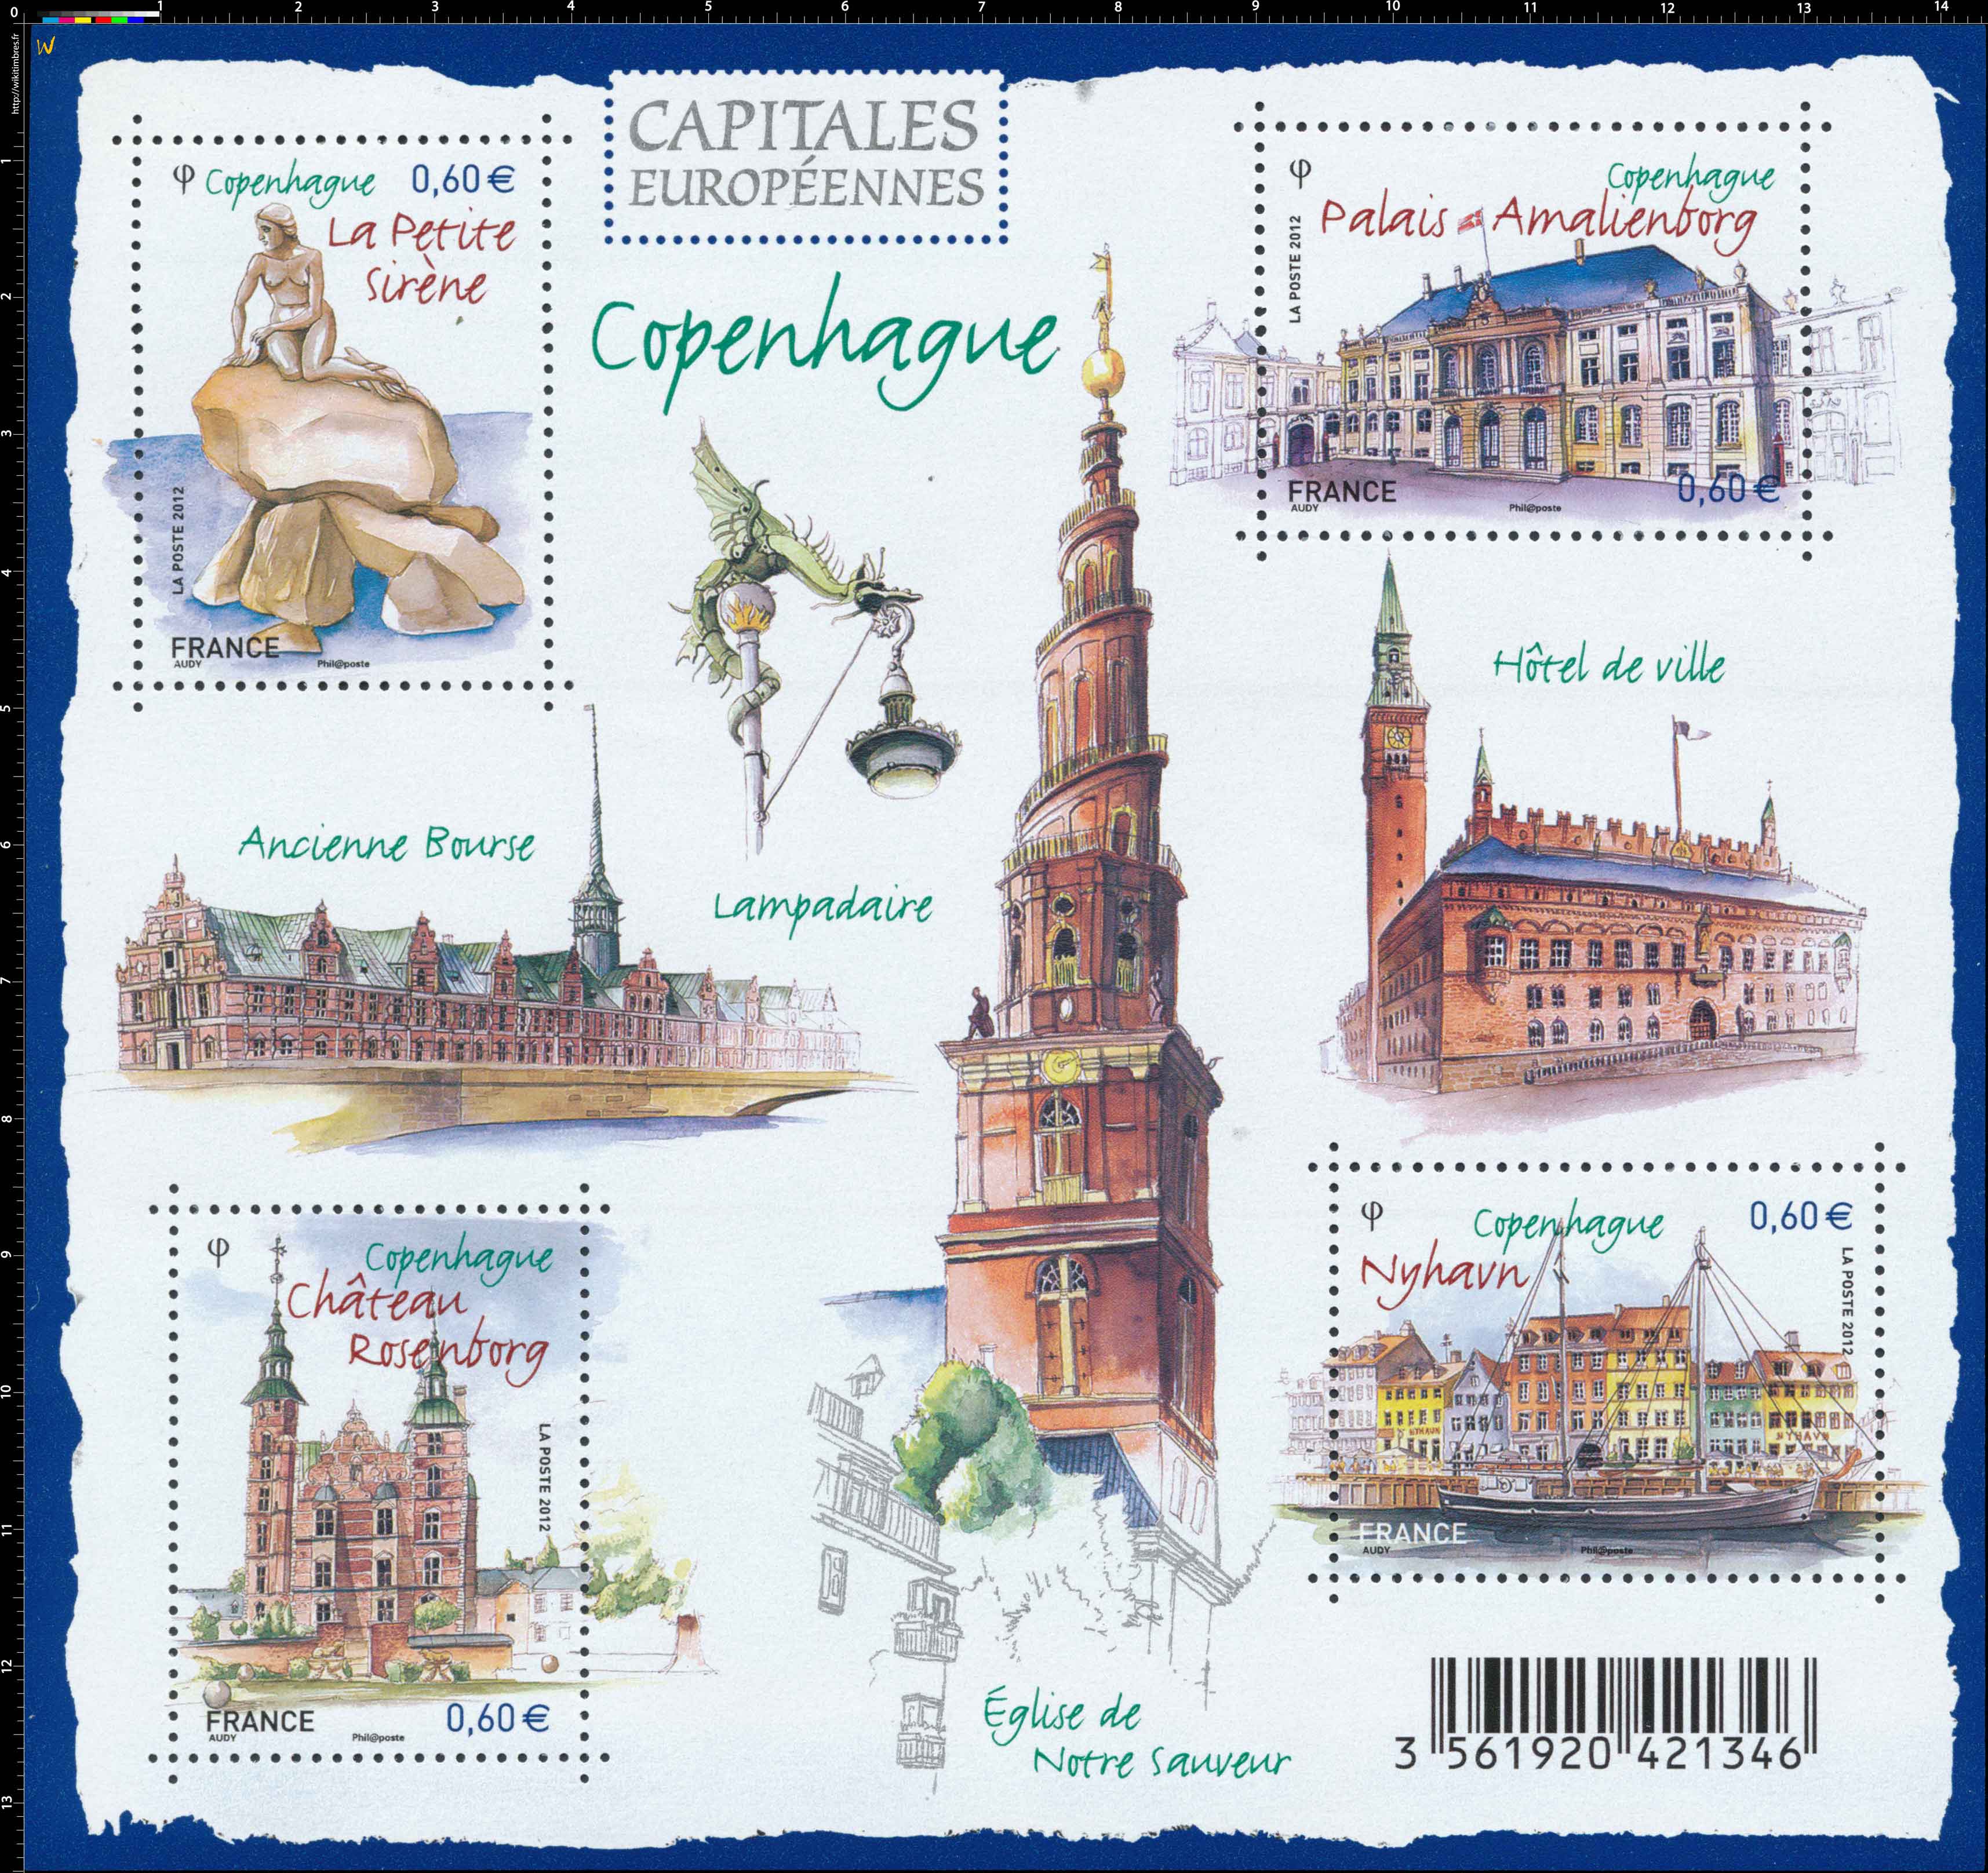 capitales européennes Copenhague